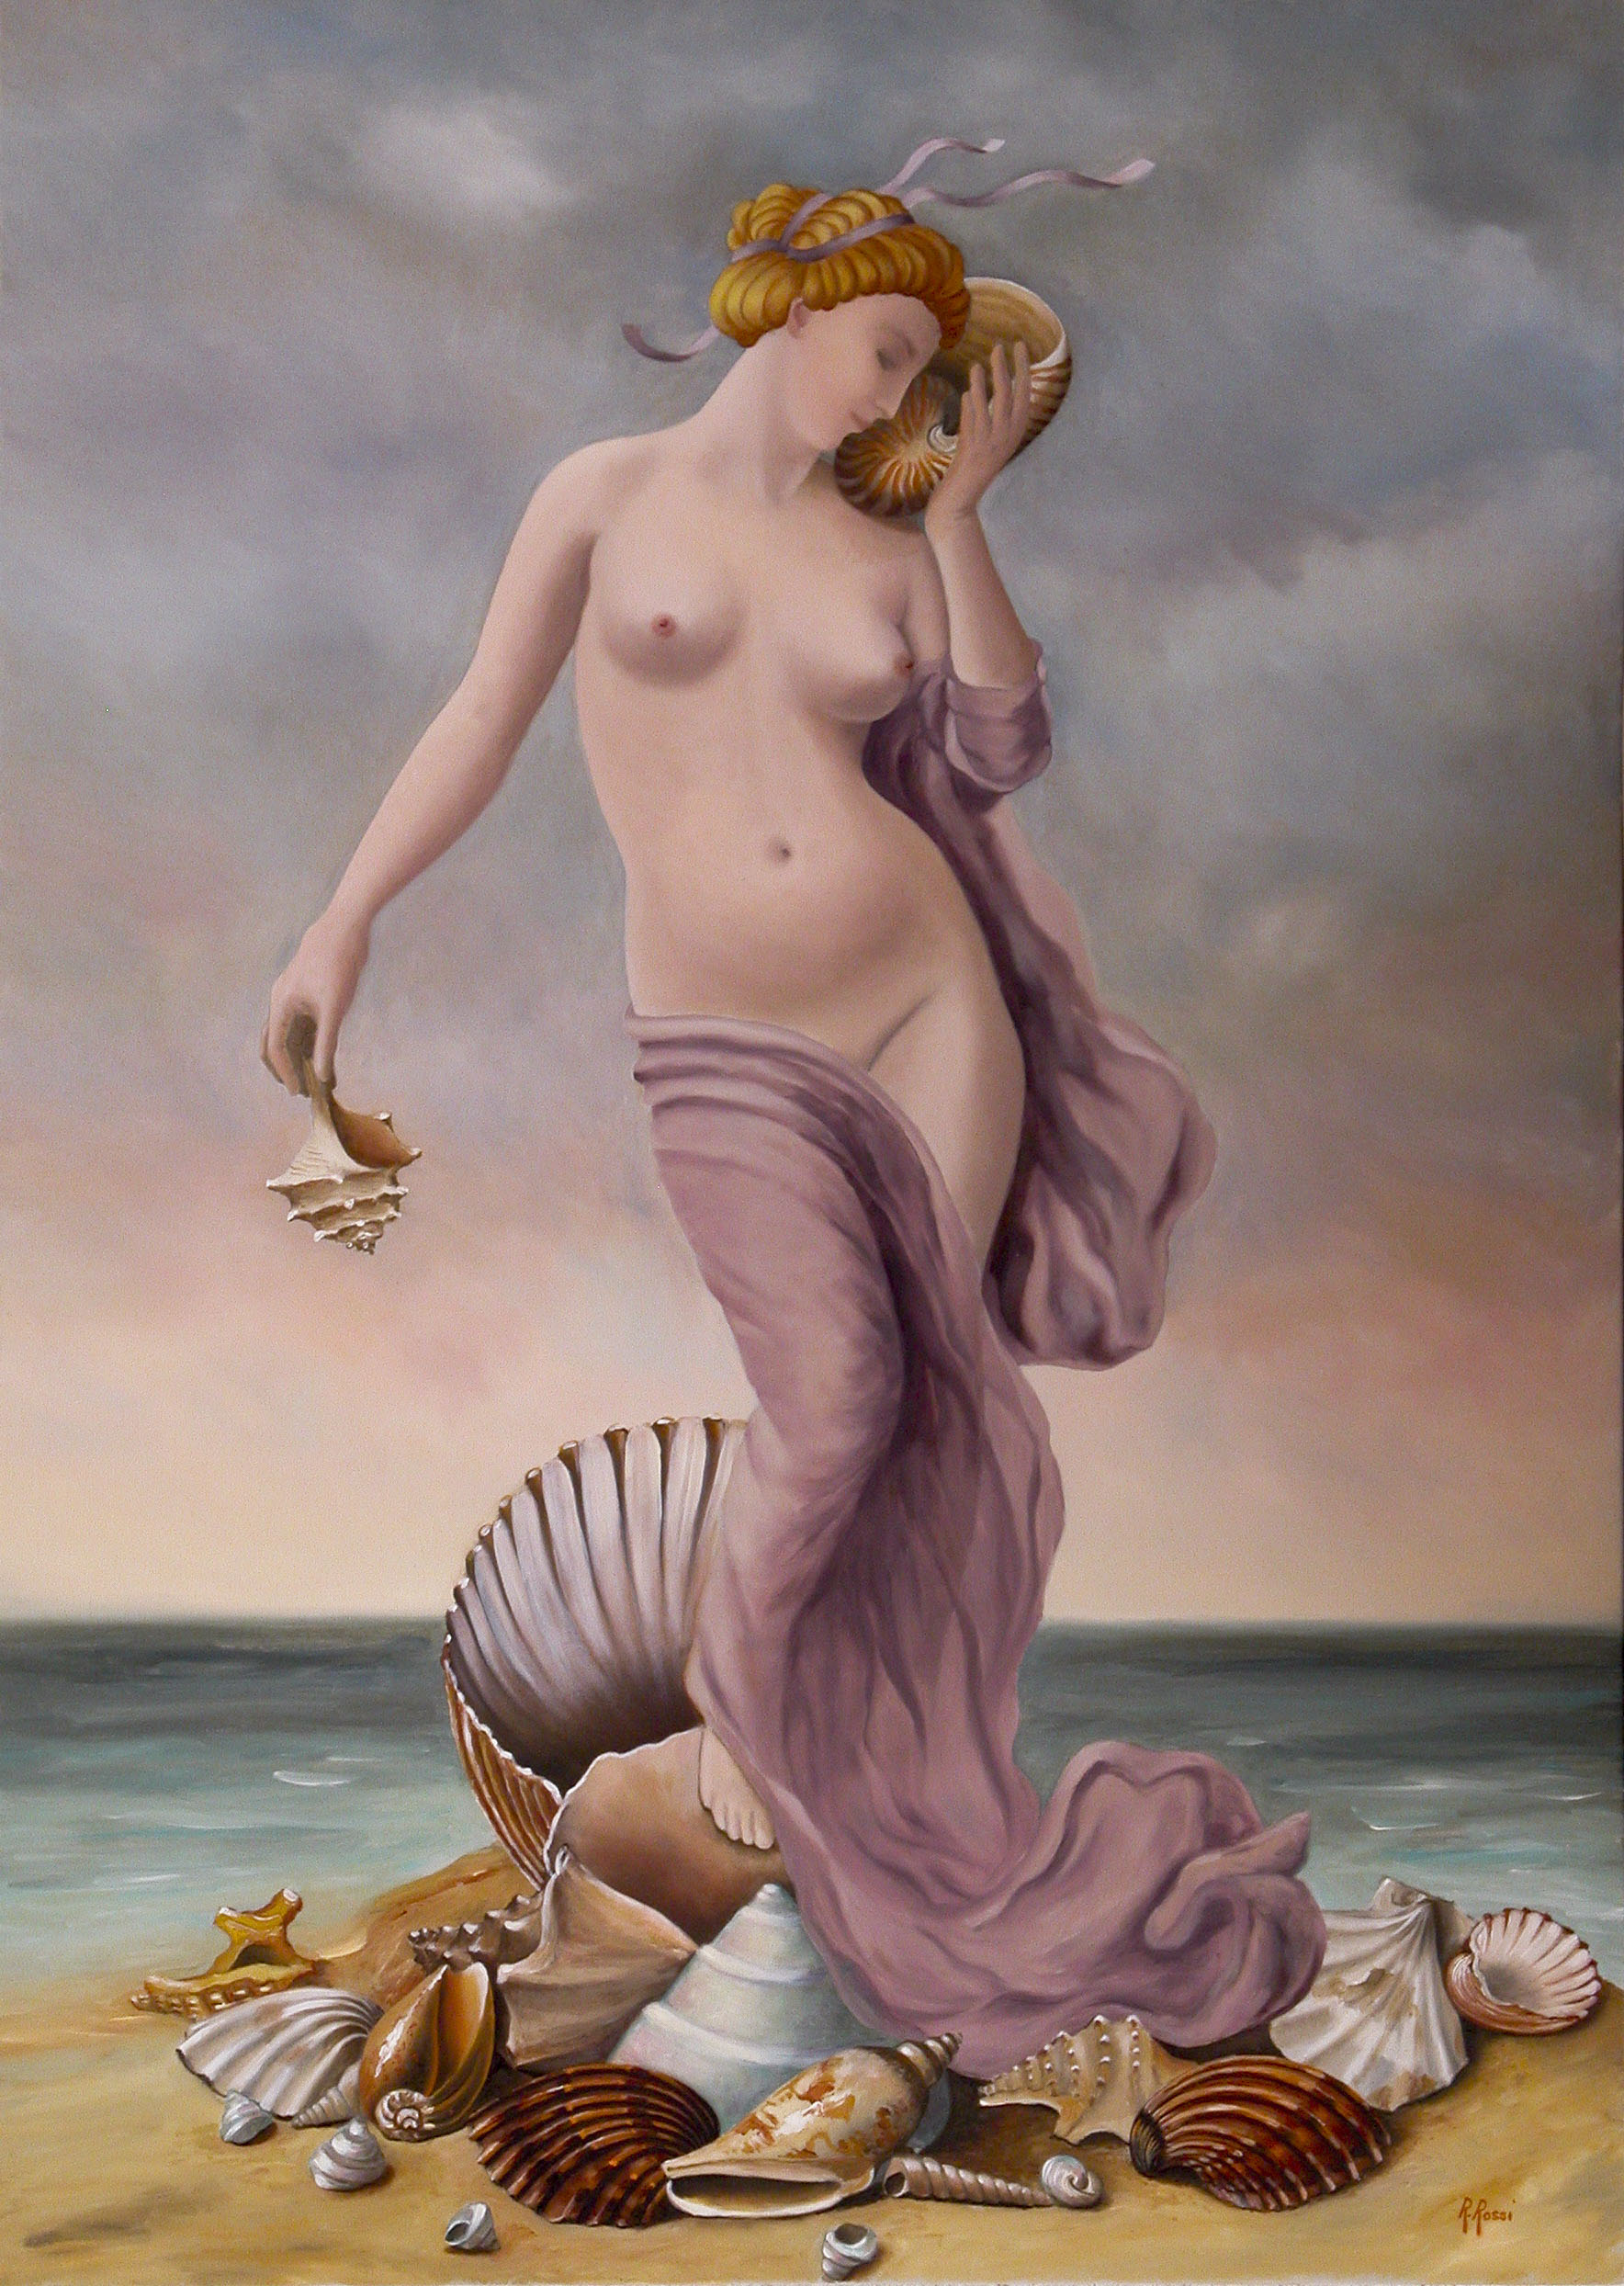 2008 roberta rossi – Le conchiglie di Afrodite – olio su tela – 70 x 50